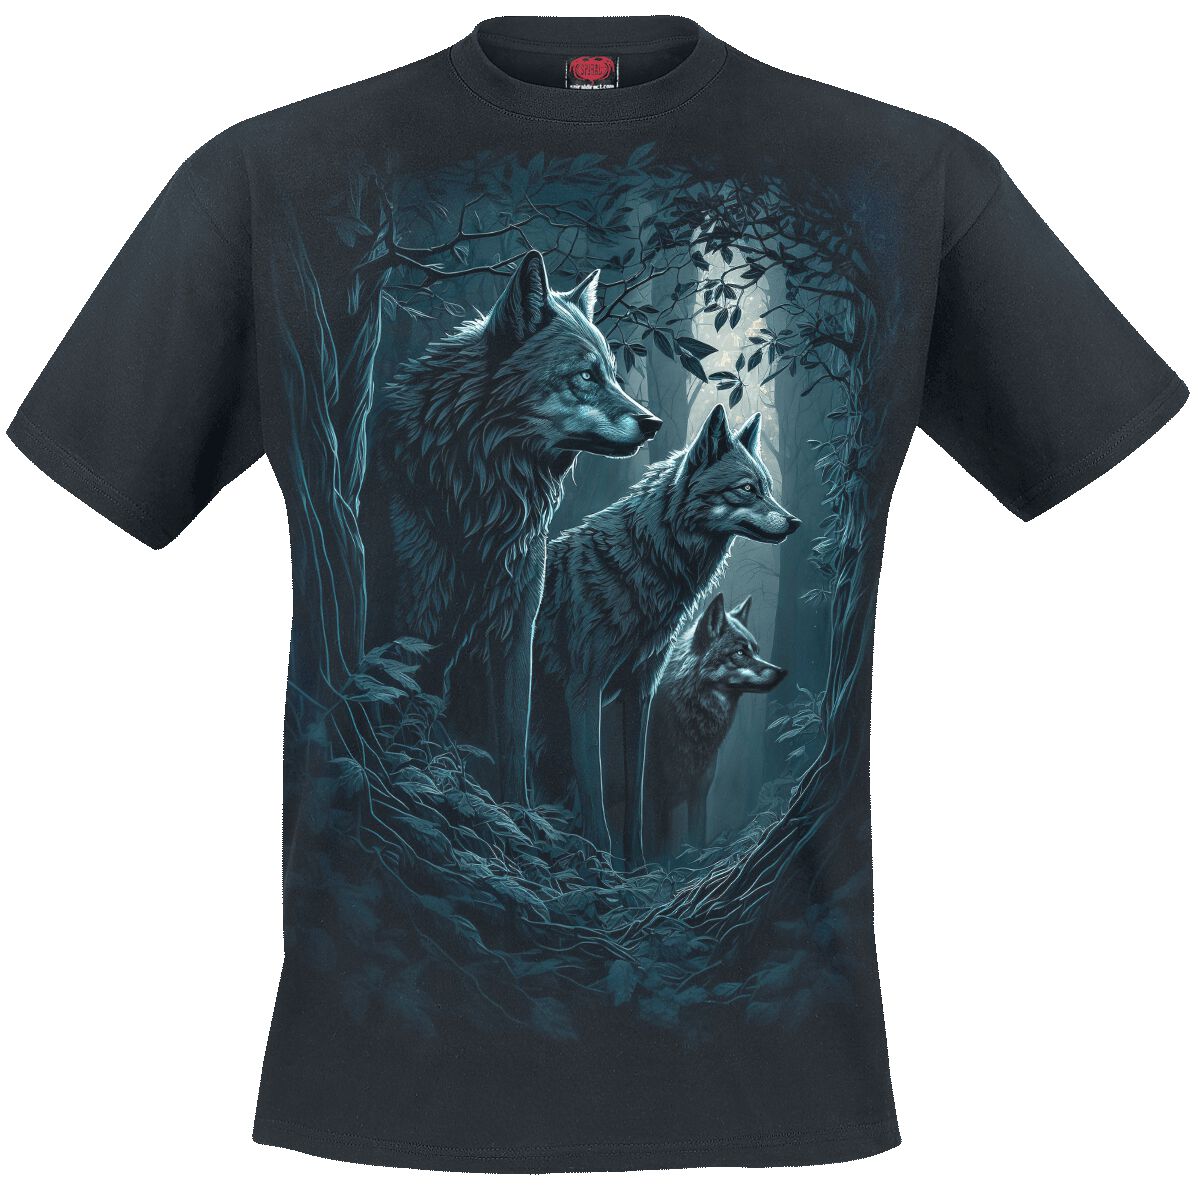 Spiral T-Shirt - Forest Guardians - S bis 4XL - für Männer - Größe XL - schwarz